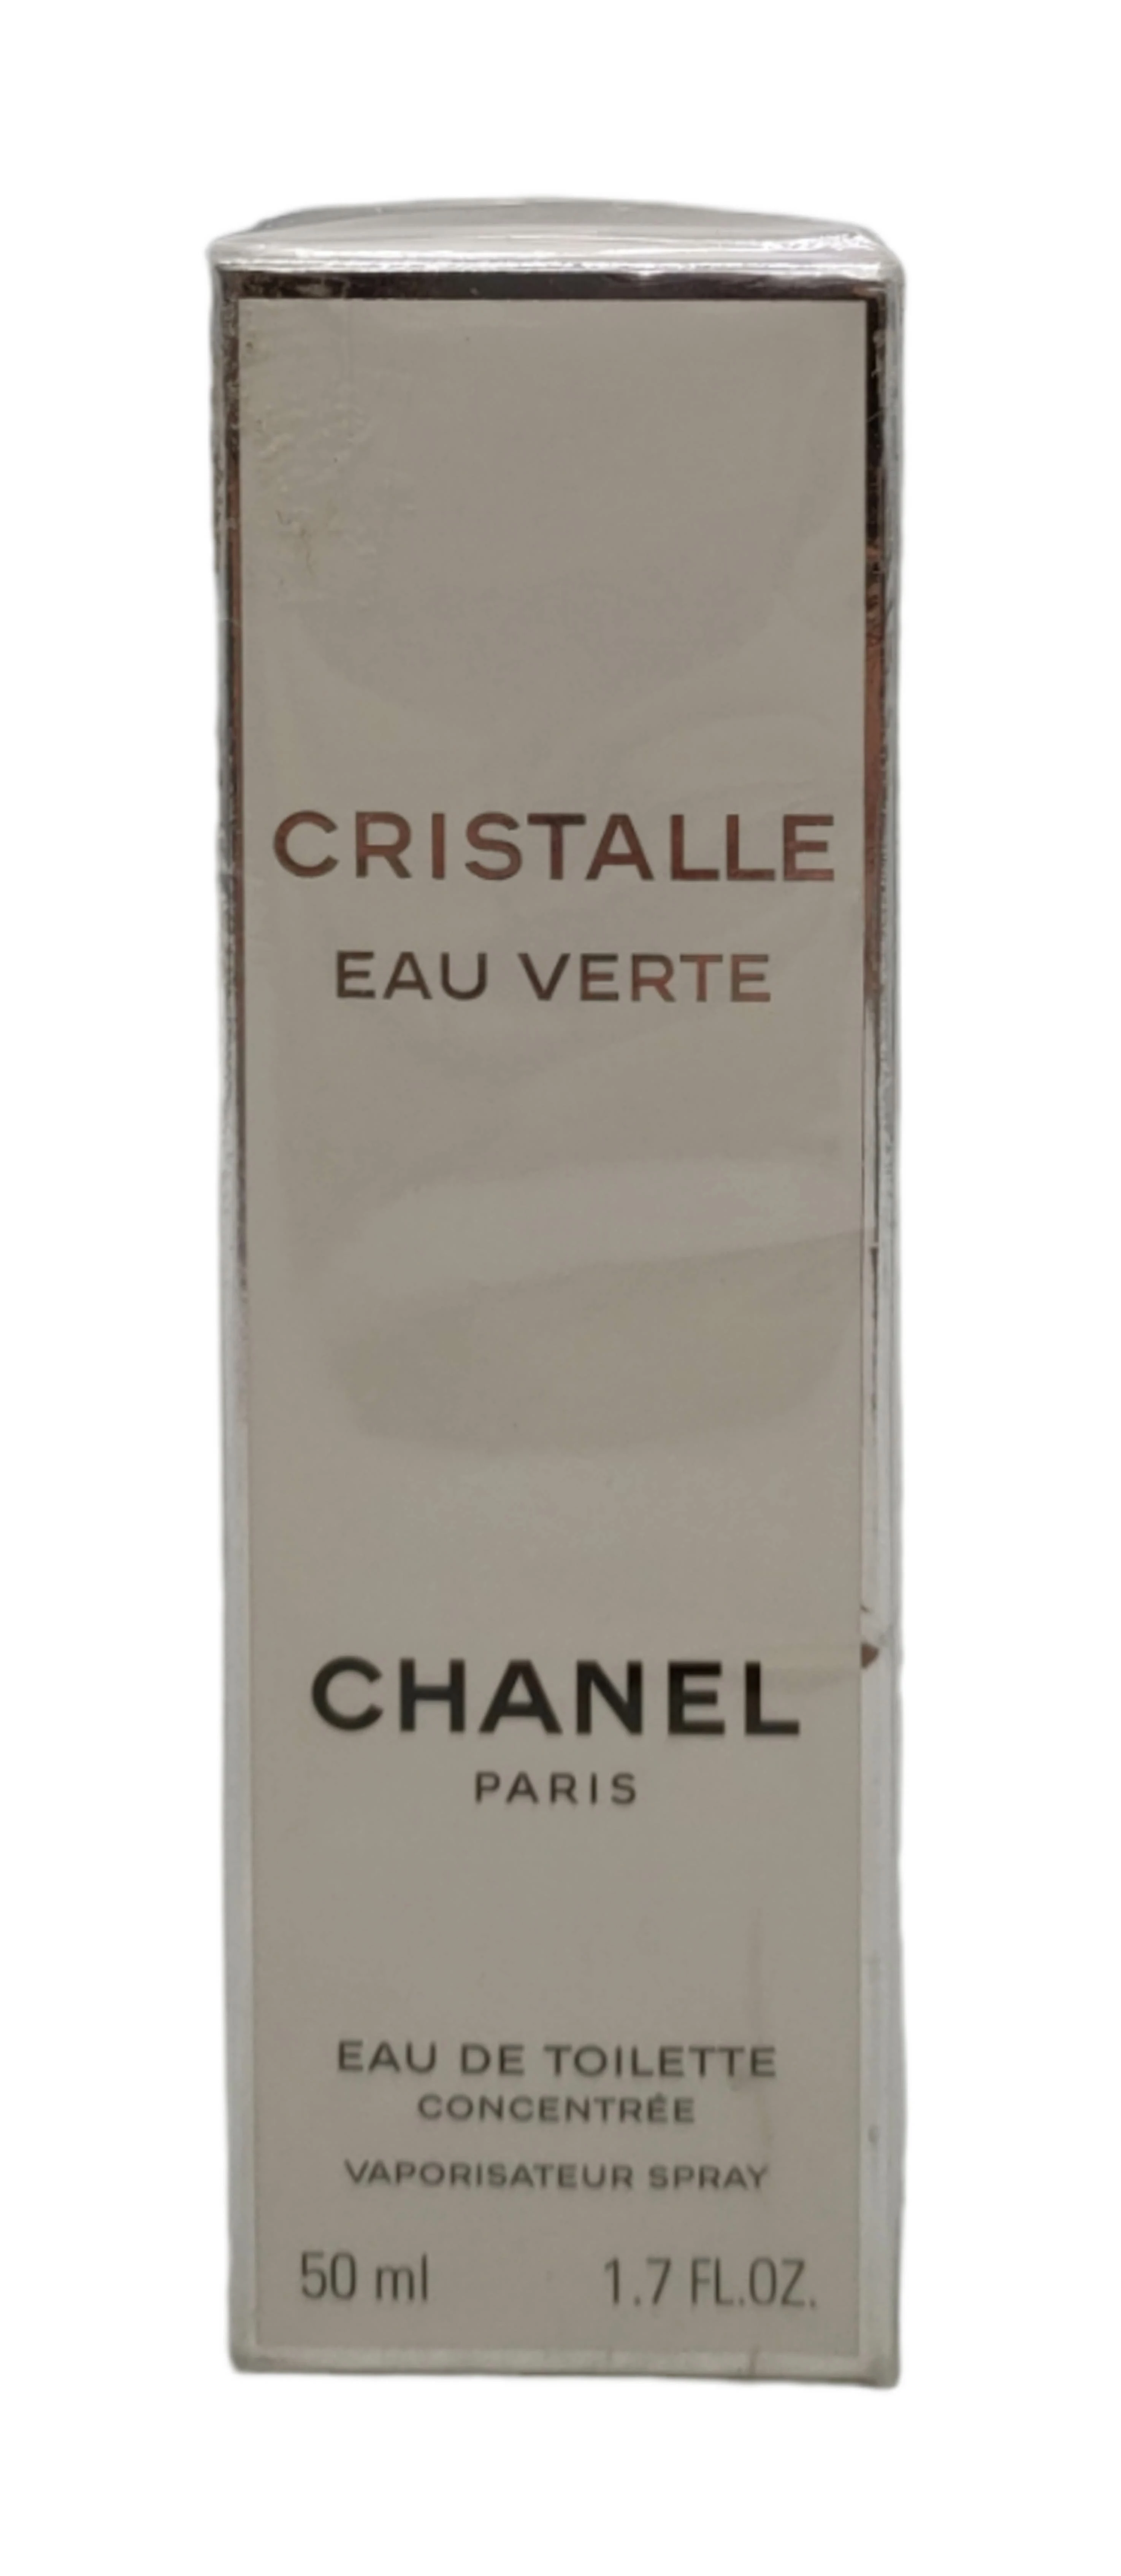  Chanel Cristalle Eau Verte Eau de Toilette Spray for Women,  3.4 oz : Beauty & Personal Care